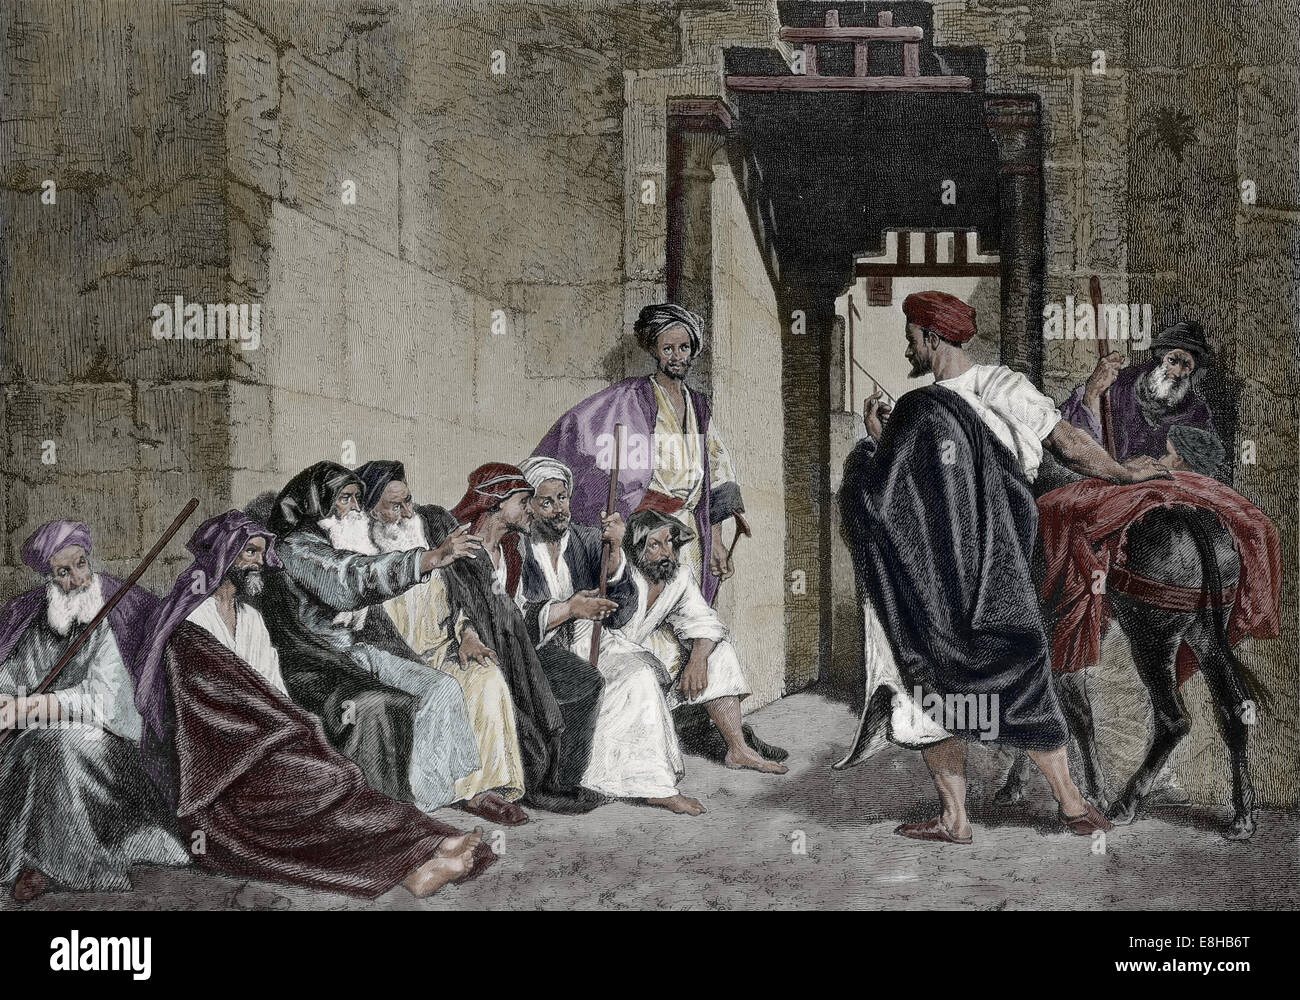 Palästinensischen. Bethlehem. In der Kloster-Türen. Kupferstich von A. Bida. Künstlerische Darstellung, 1885. Veröffentlicht in Spanien. Stockfoto